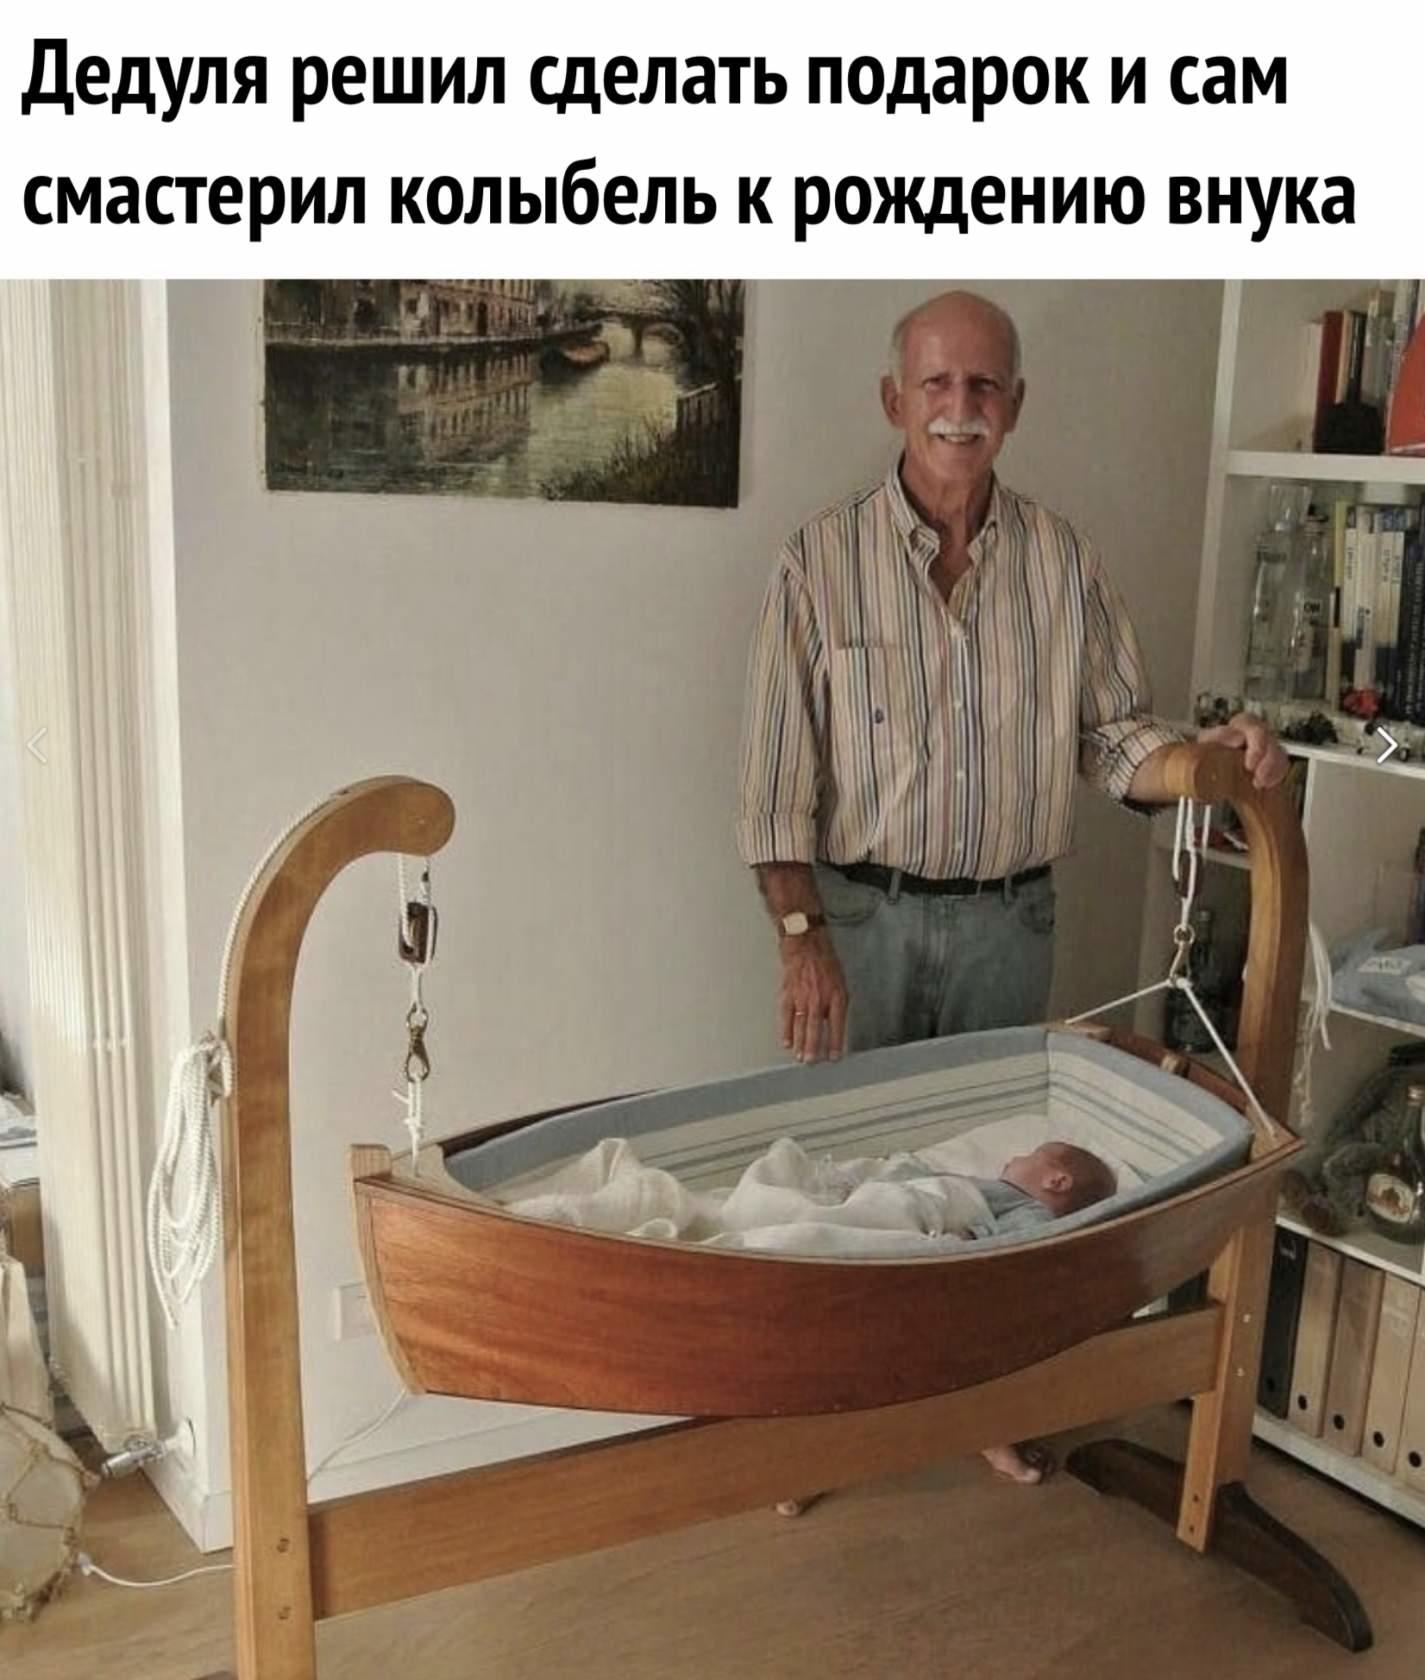 Дедуля решил сделать подарок и сам смастерил колыбель к рождению внука)